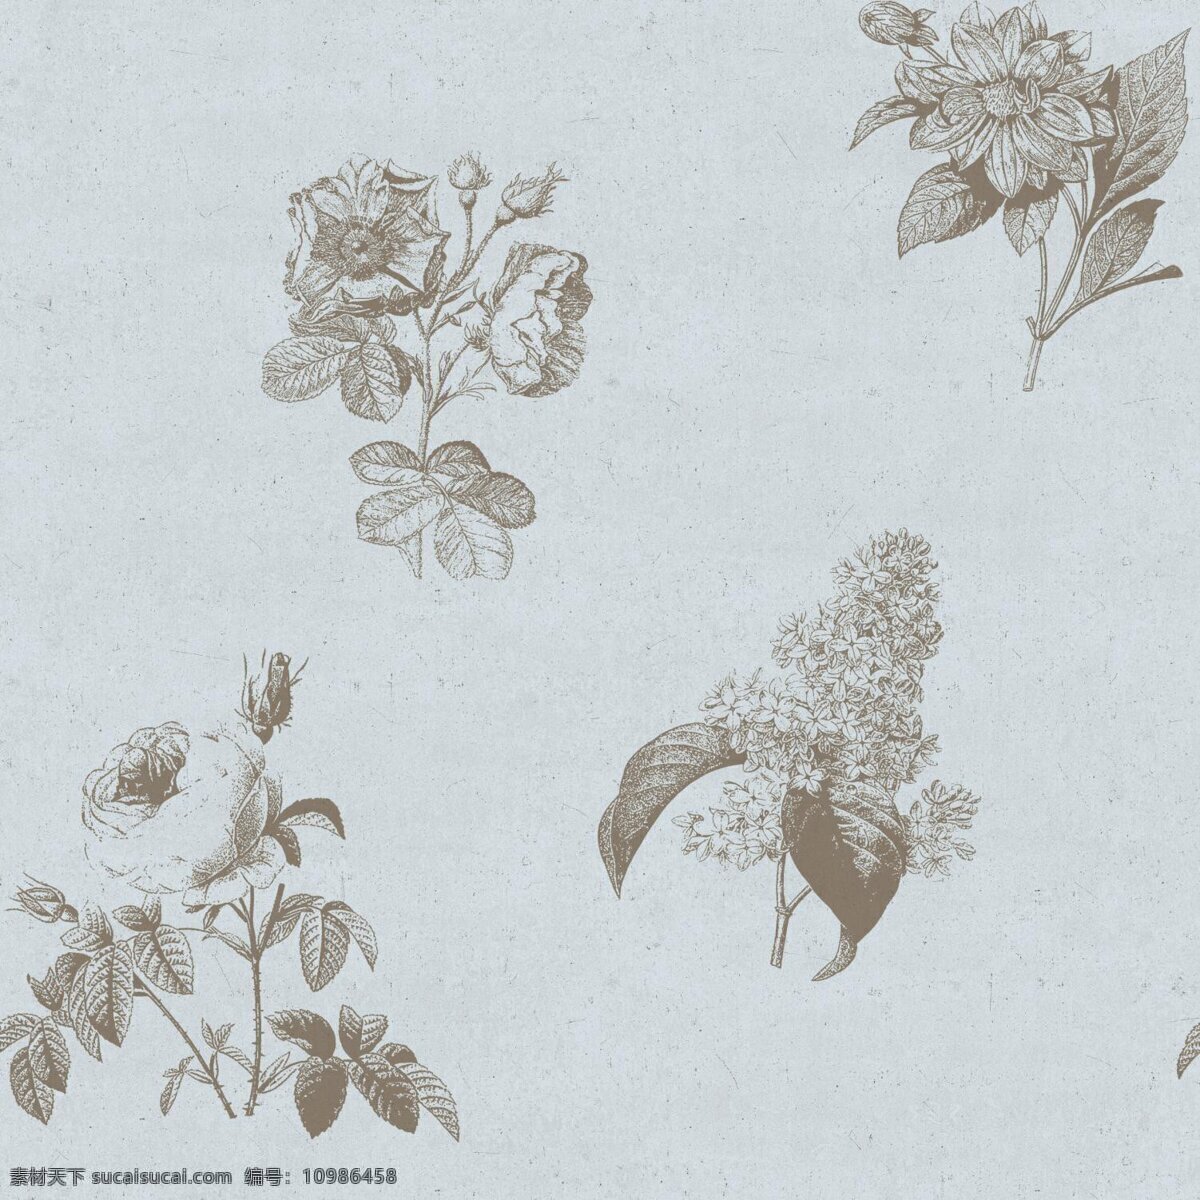 简约 清新 褐色 花朵 壁纸 图案 褐色花朵 花朵壁纸 灰蓝色底纹 简约风格 植物元素